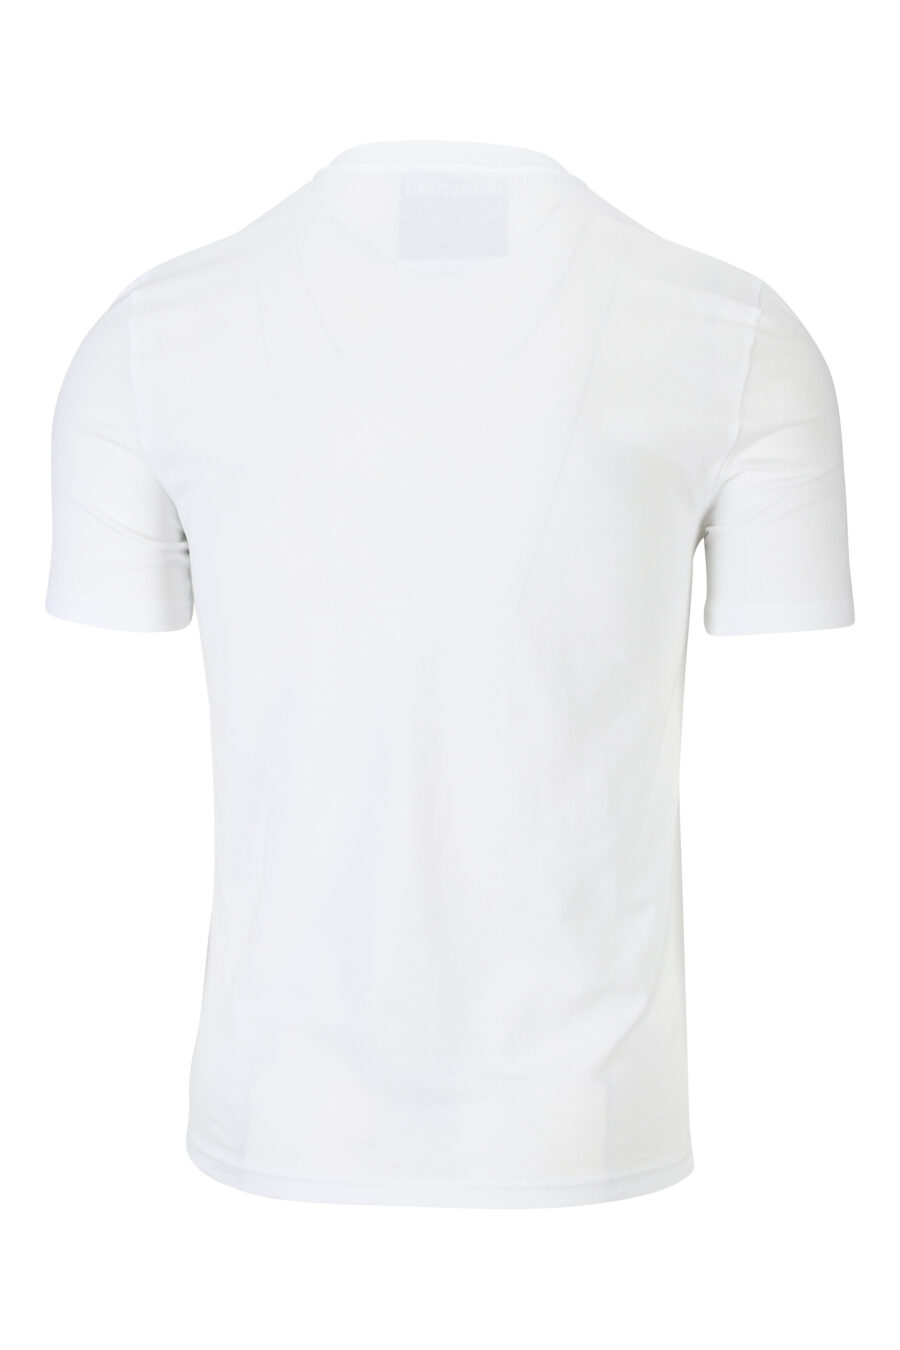 Camiseta blanca con minilogo desgastado negro - 889316938791 1